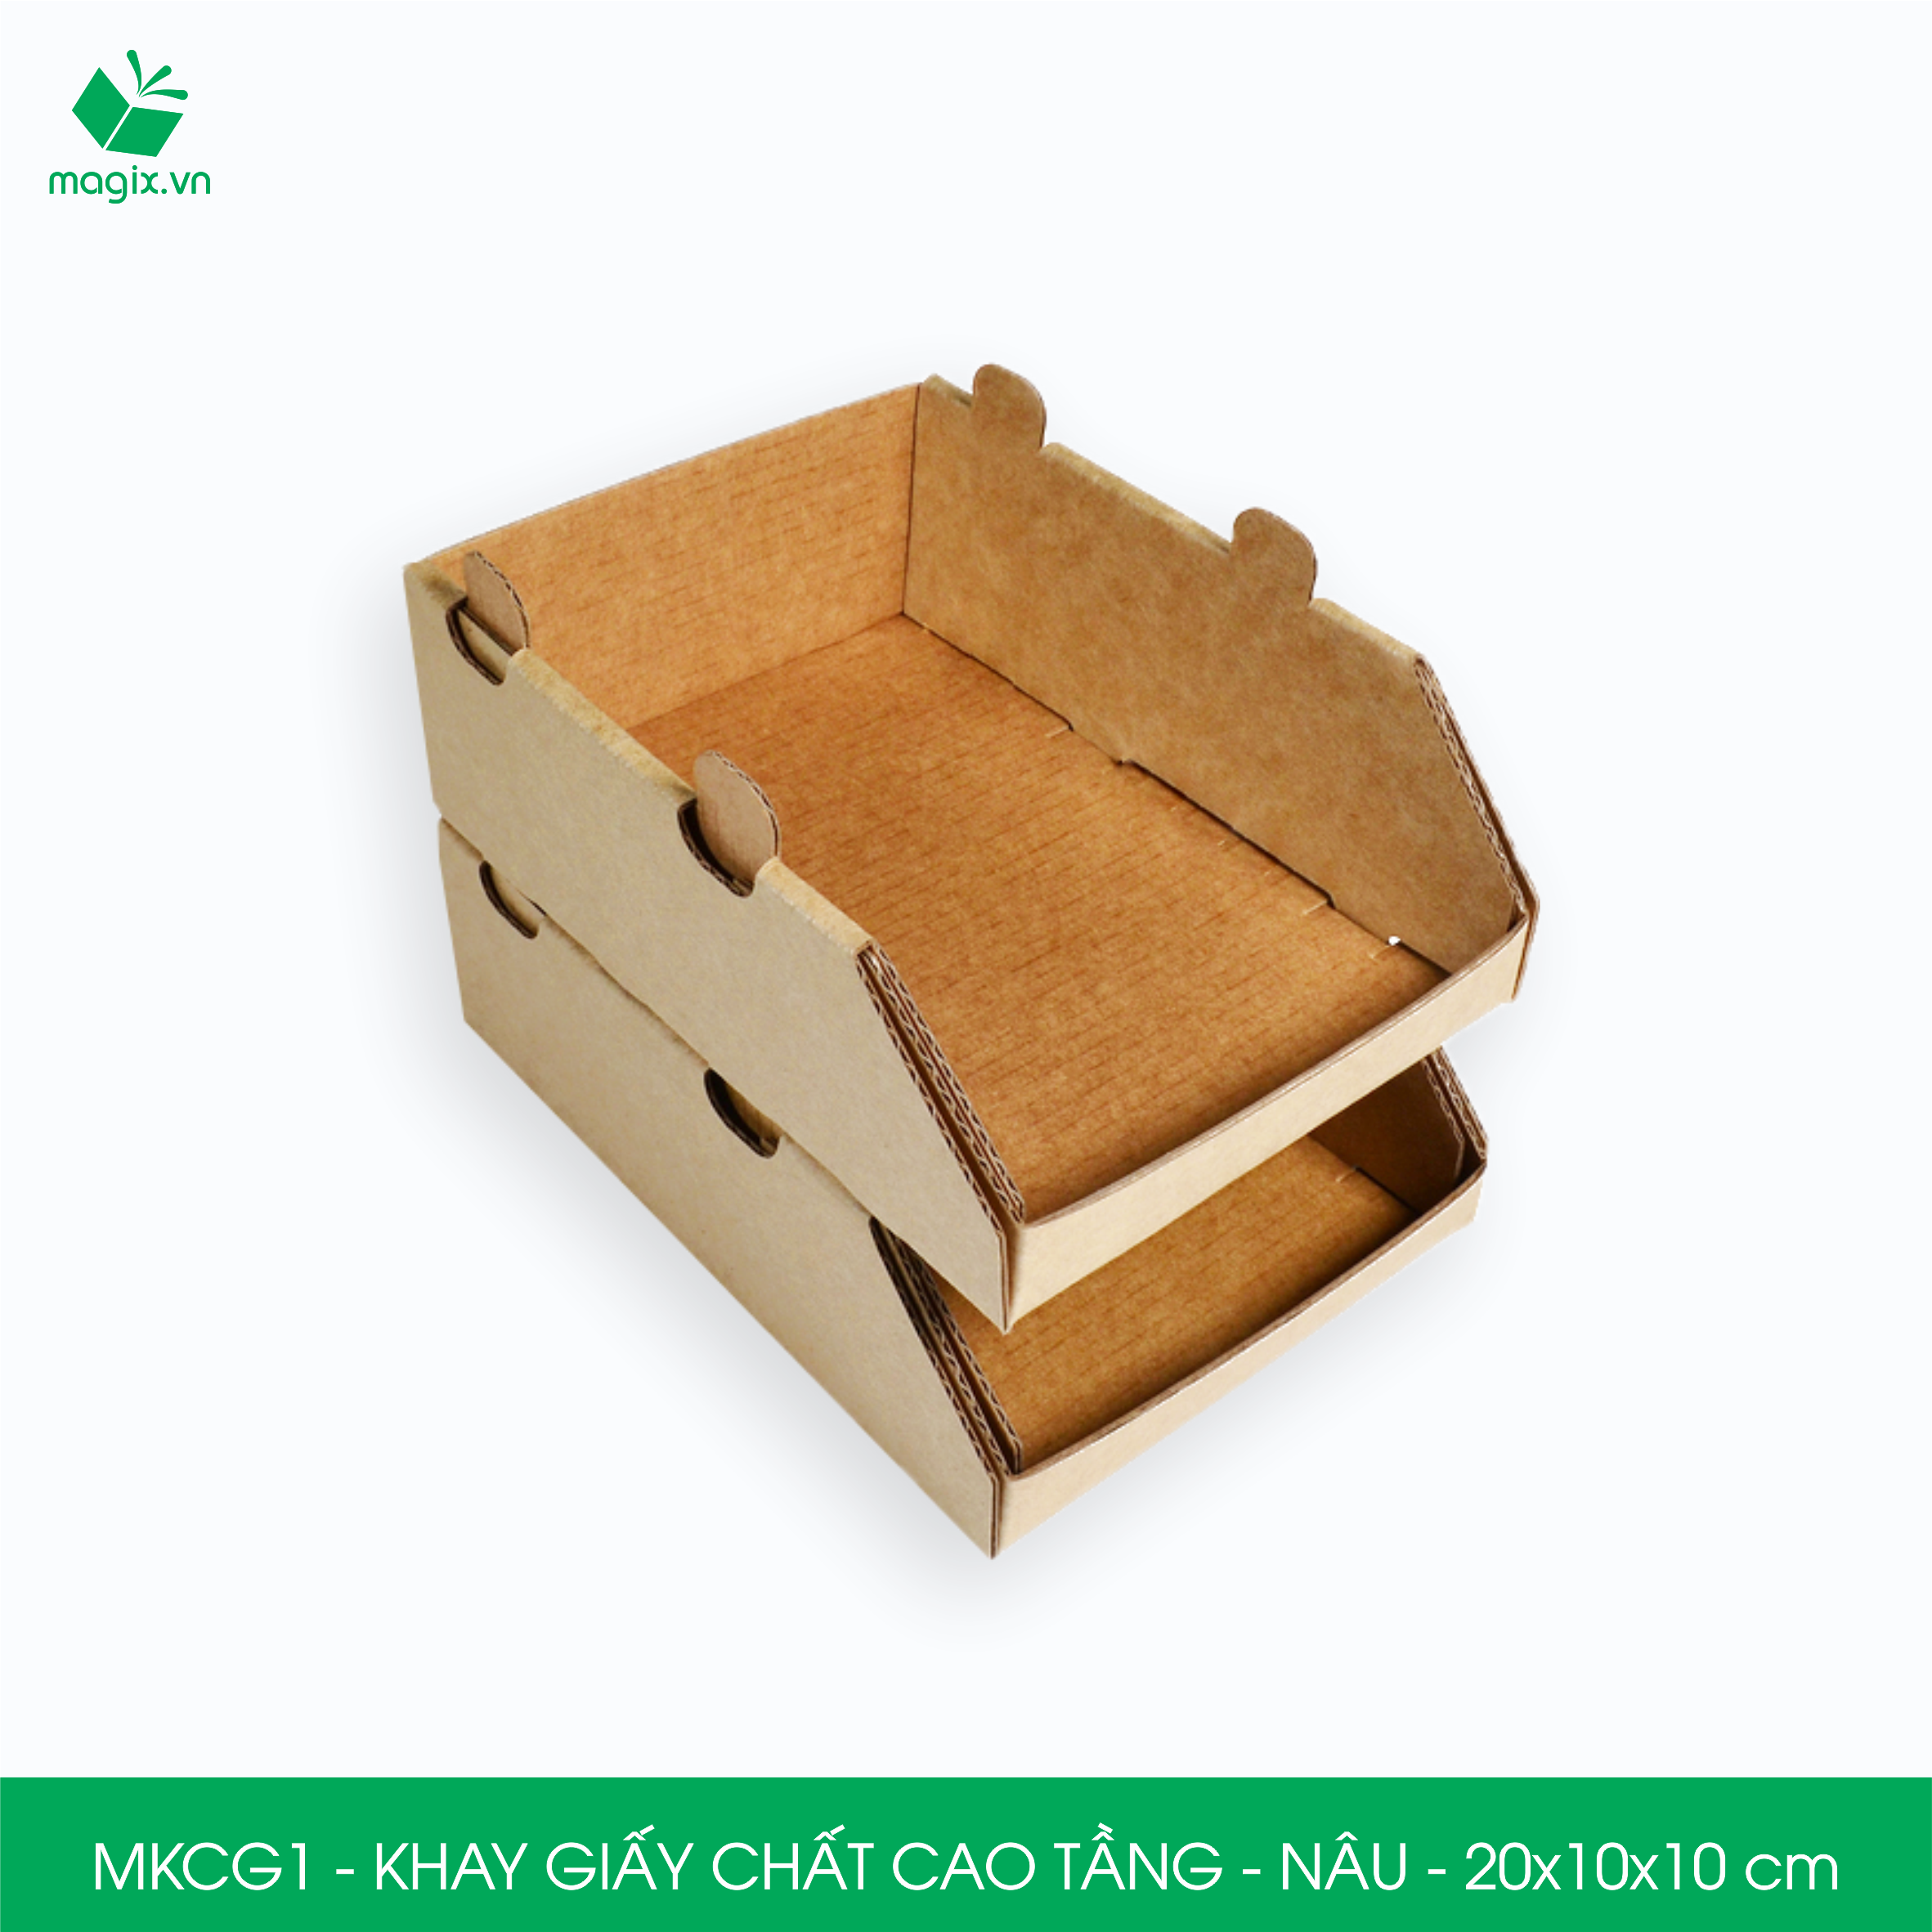 MKCG - 5 Khay giấy chất cao tầng bằng giấy carton siêu cứng, kệ giấy đựng đồ văn phòng, khay đựng dụng cụ, khay linh kiện, kệ phân loại dụng cụ - Nhiều kích thước